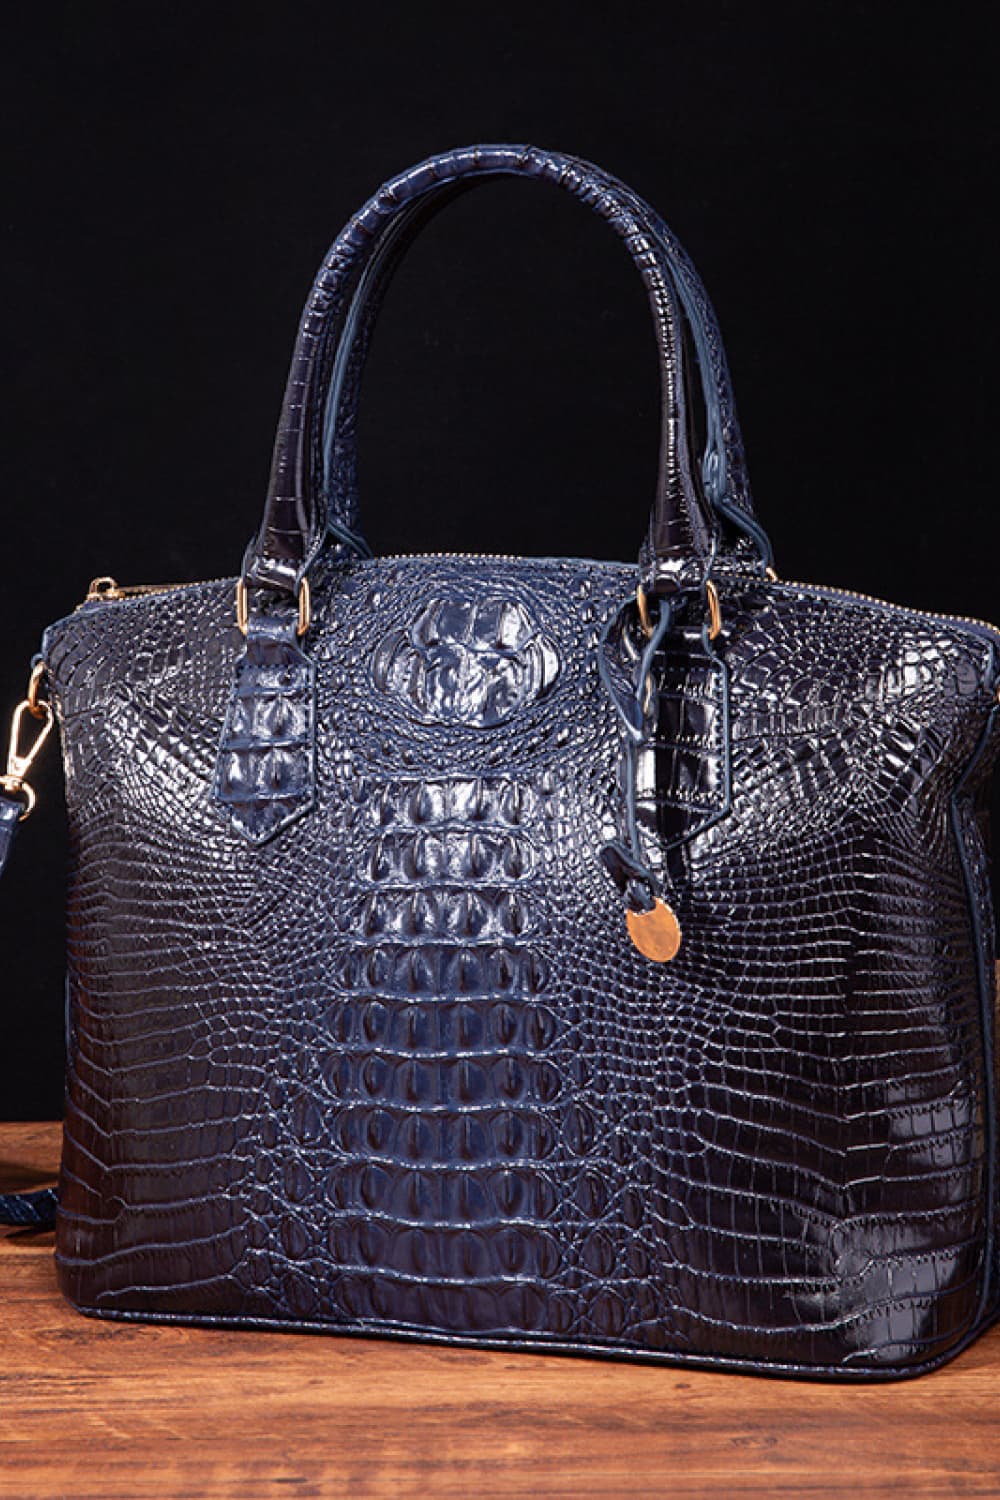 PU Leather Handbag myETYN